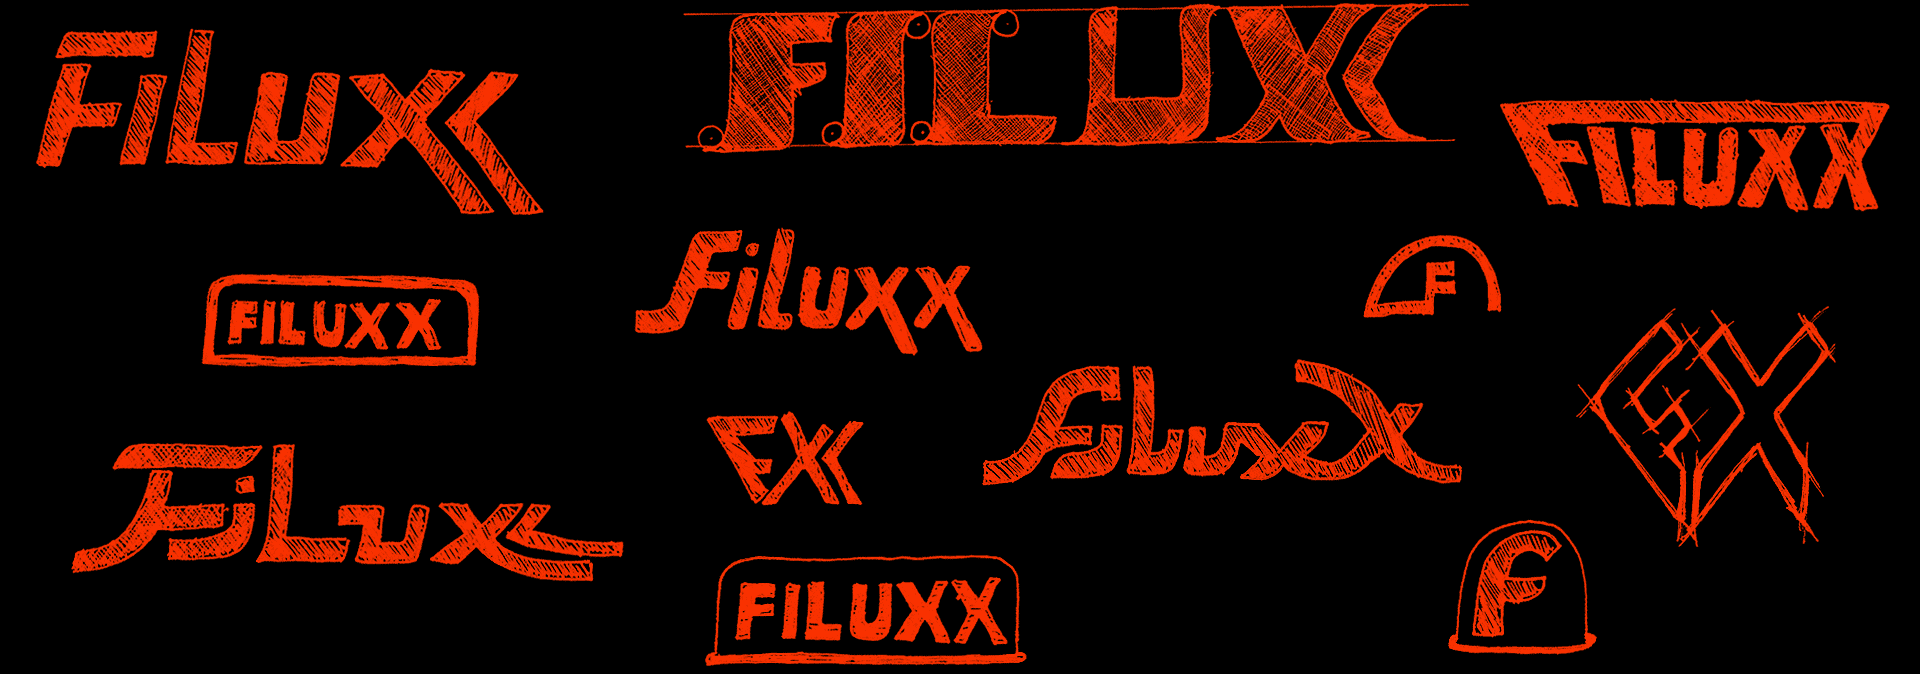 Filuxx Intro